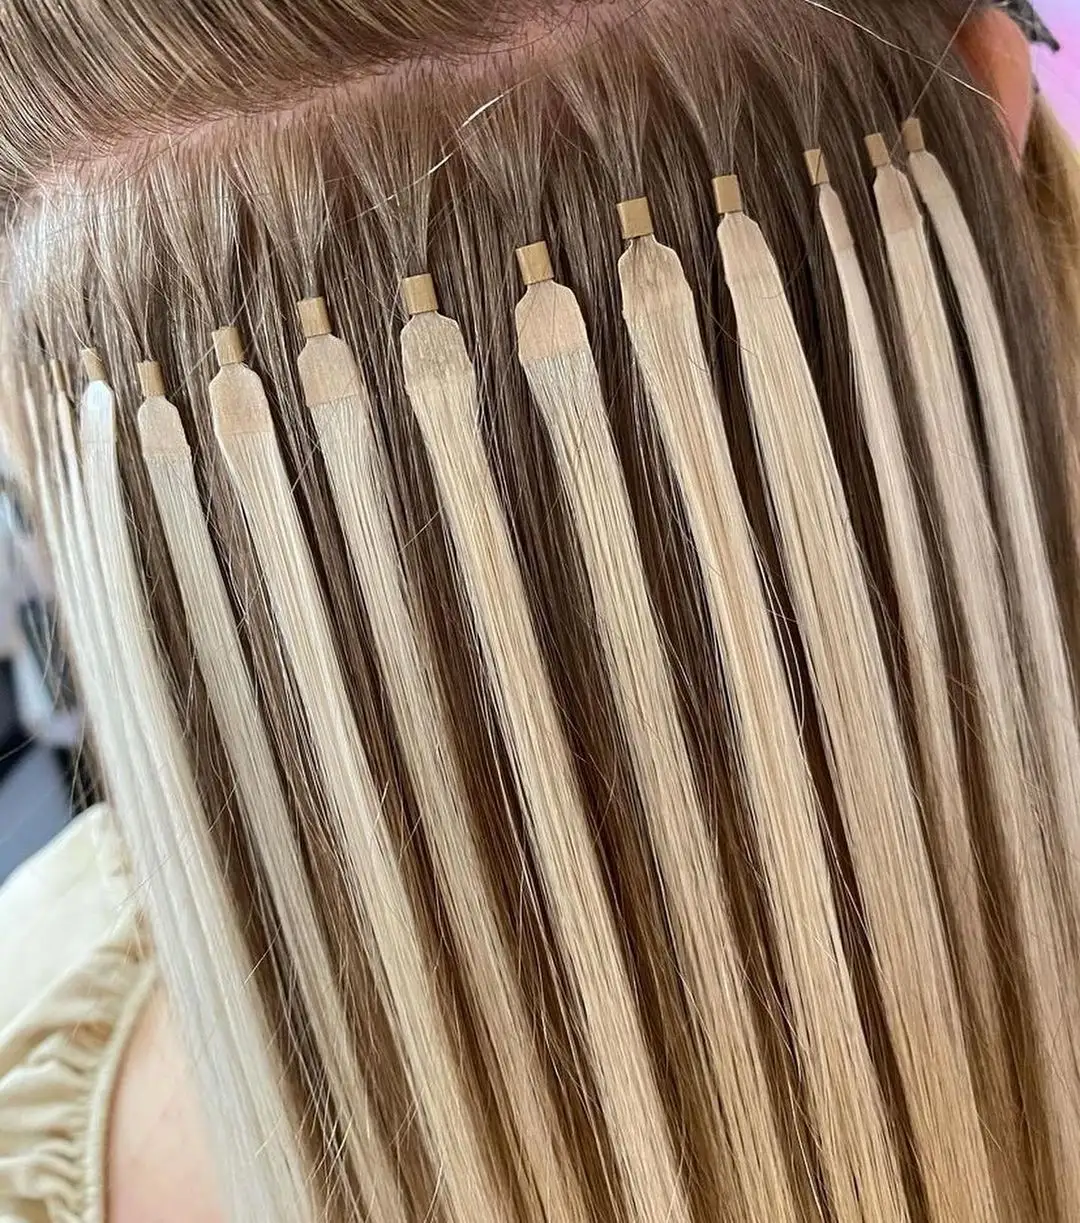 Fangcun nuovo arrivo Remy cuticola 100% capelli vergini umani Pre Bonded Fan Y Tip Hair Extensions